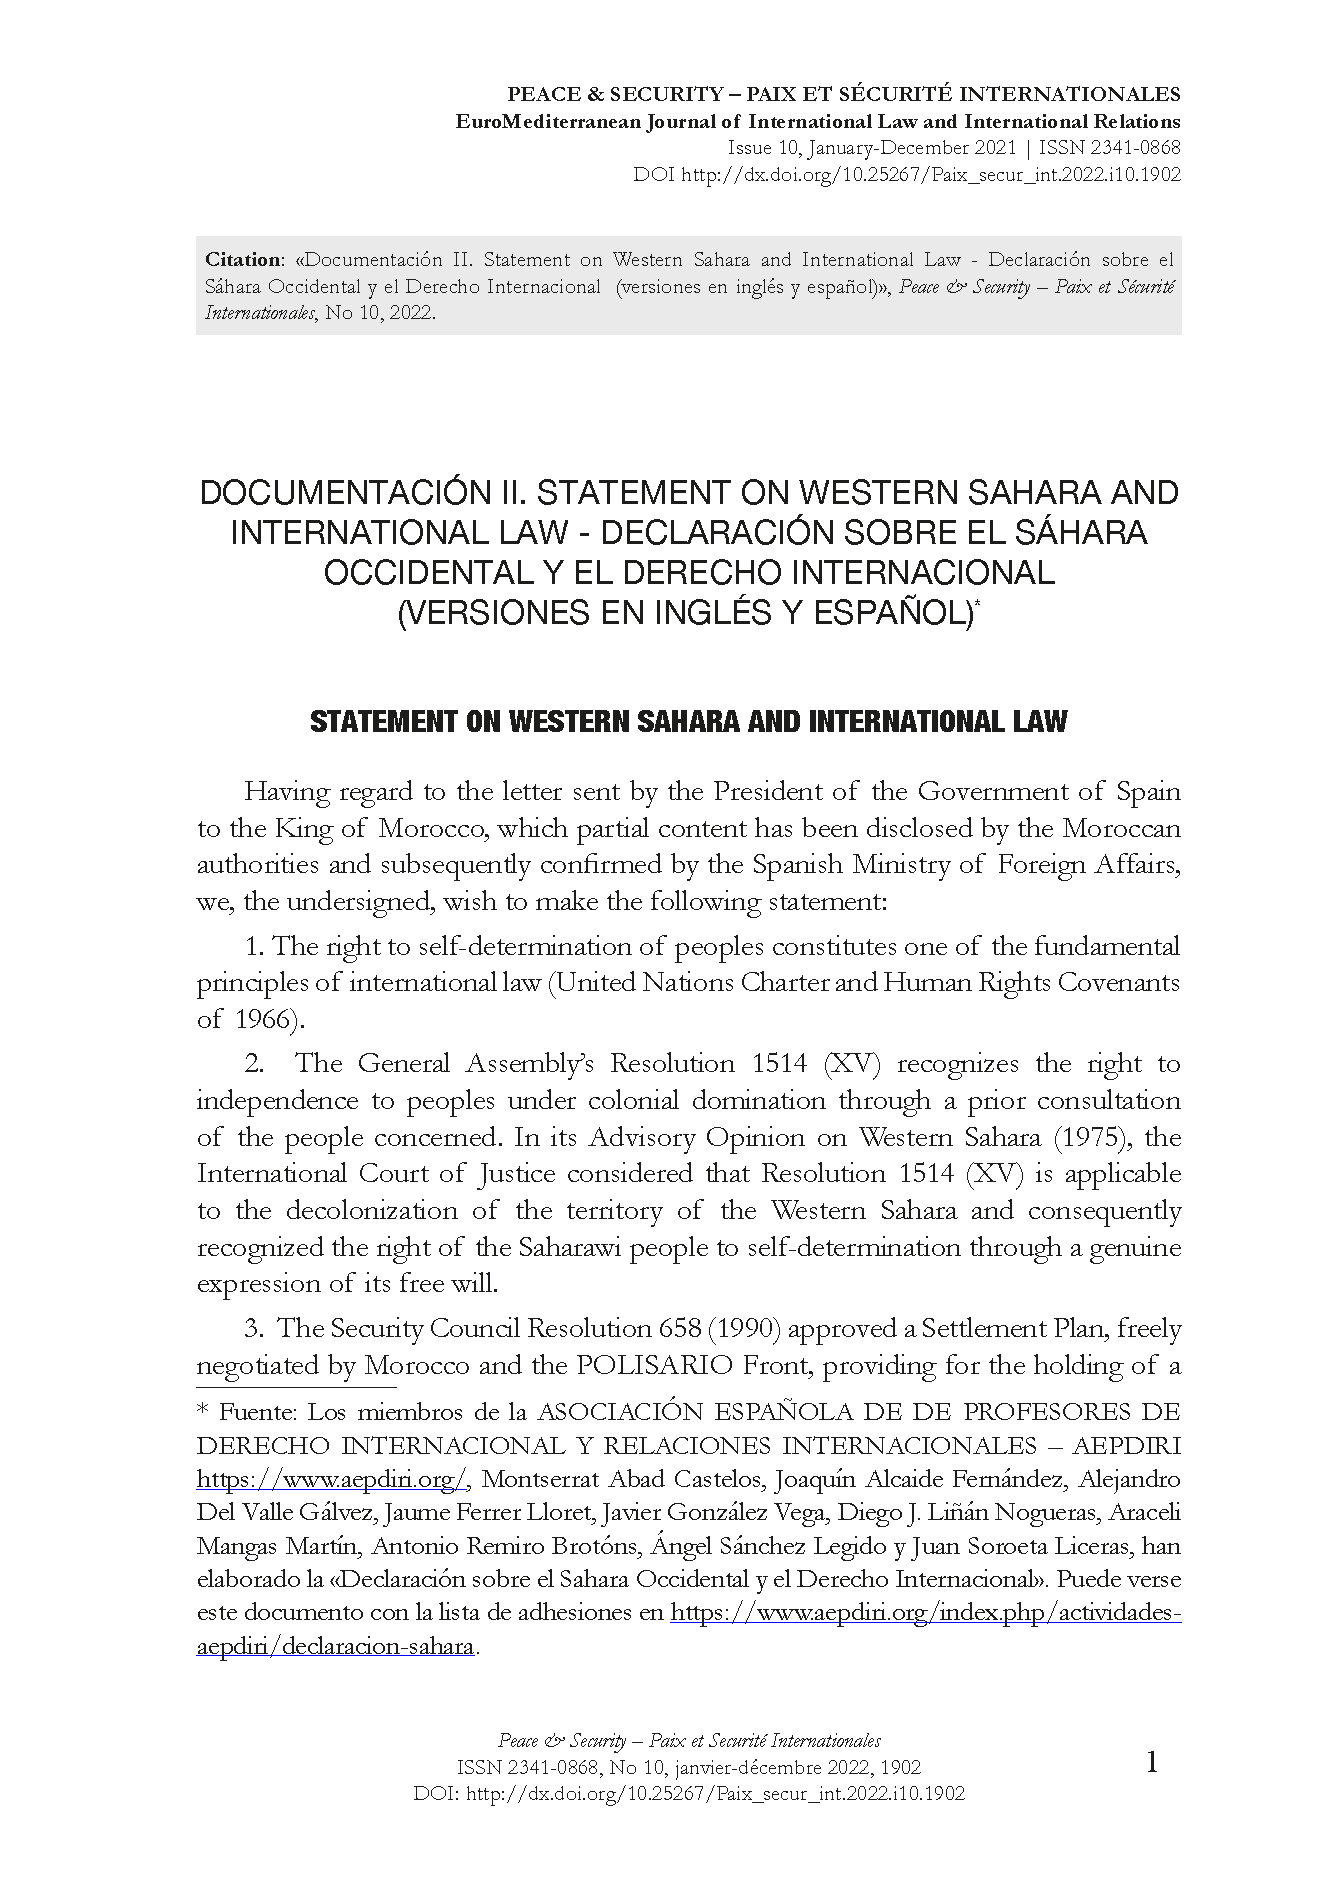 Documentación II. Statement on Western Sahara and International Law - Declaración sobre el Sáhara Occidental y el Derecho Internacional  (versiones en inglés y español)